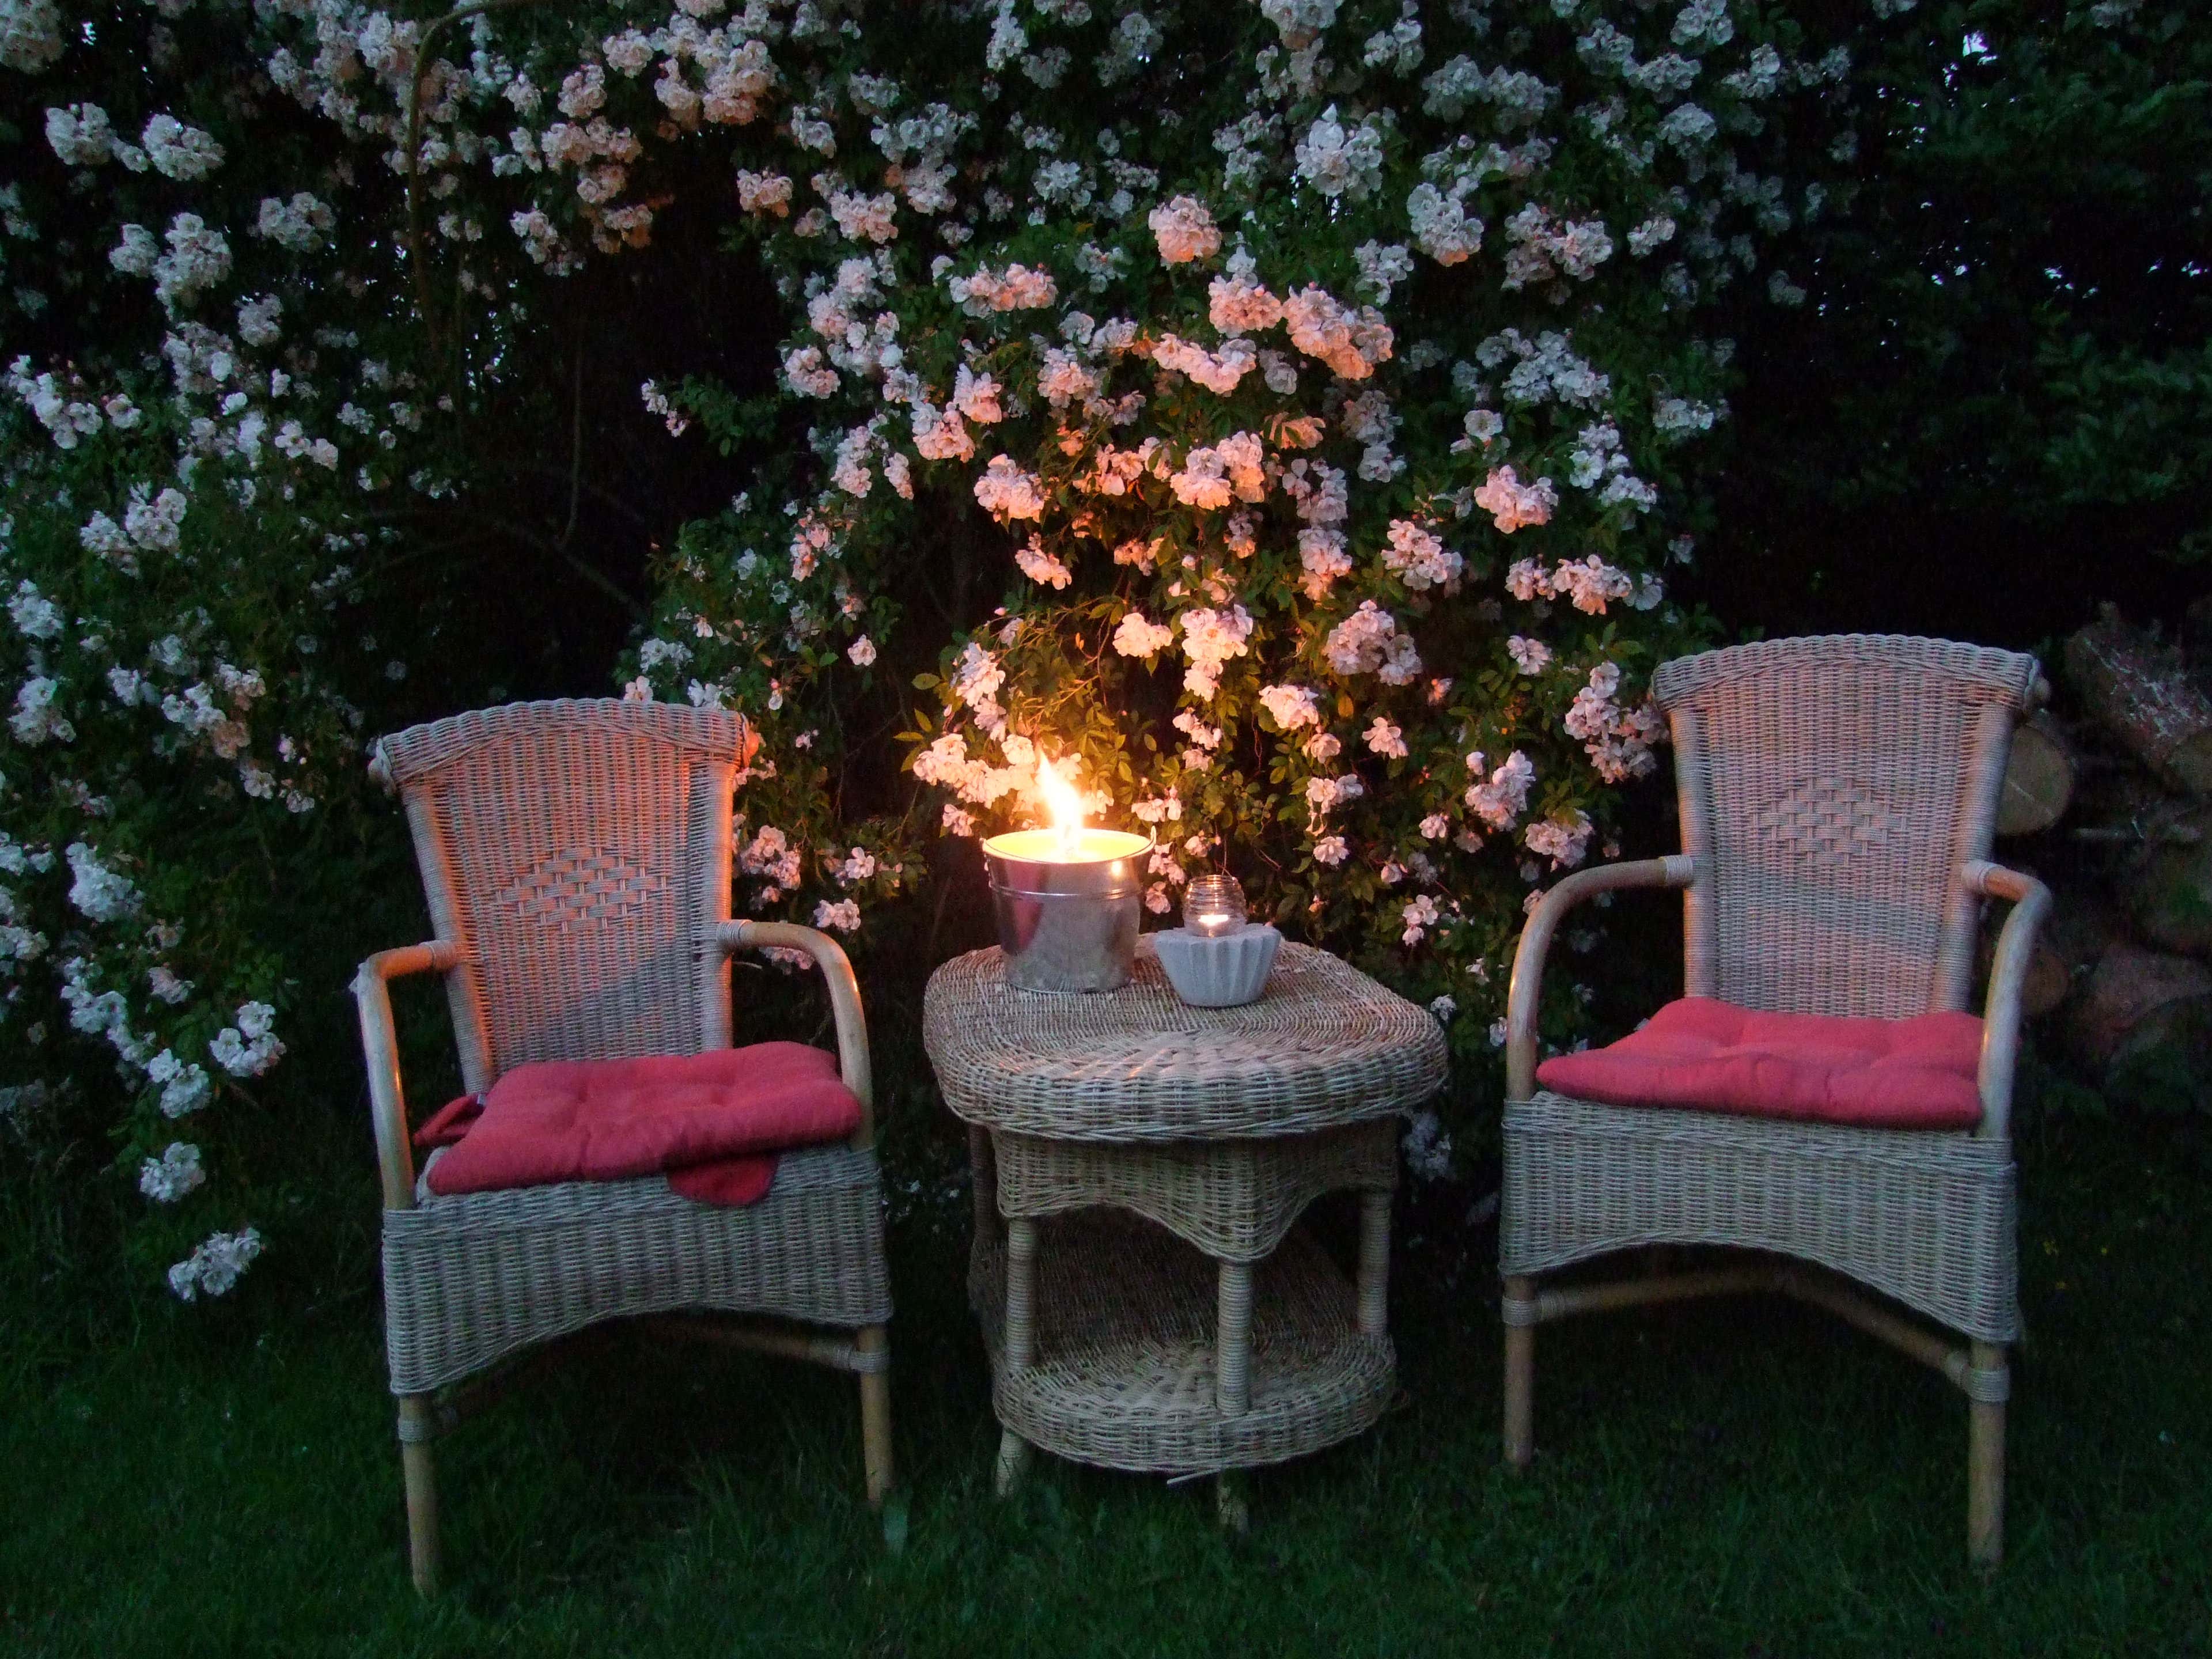 Romantik pur – diese Sitzecke würde auch perfekt ins Susans rosa Gartentraum passen.